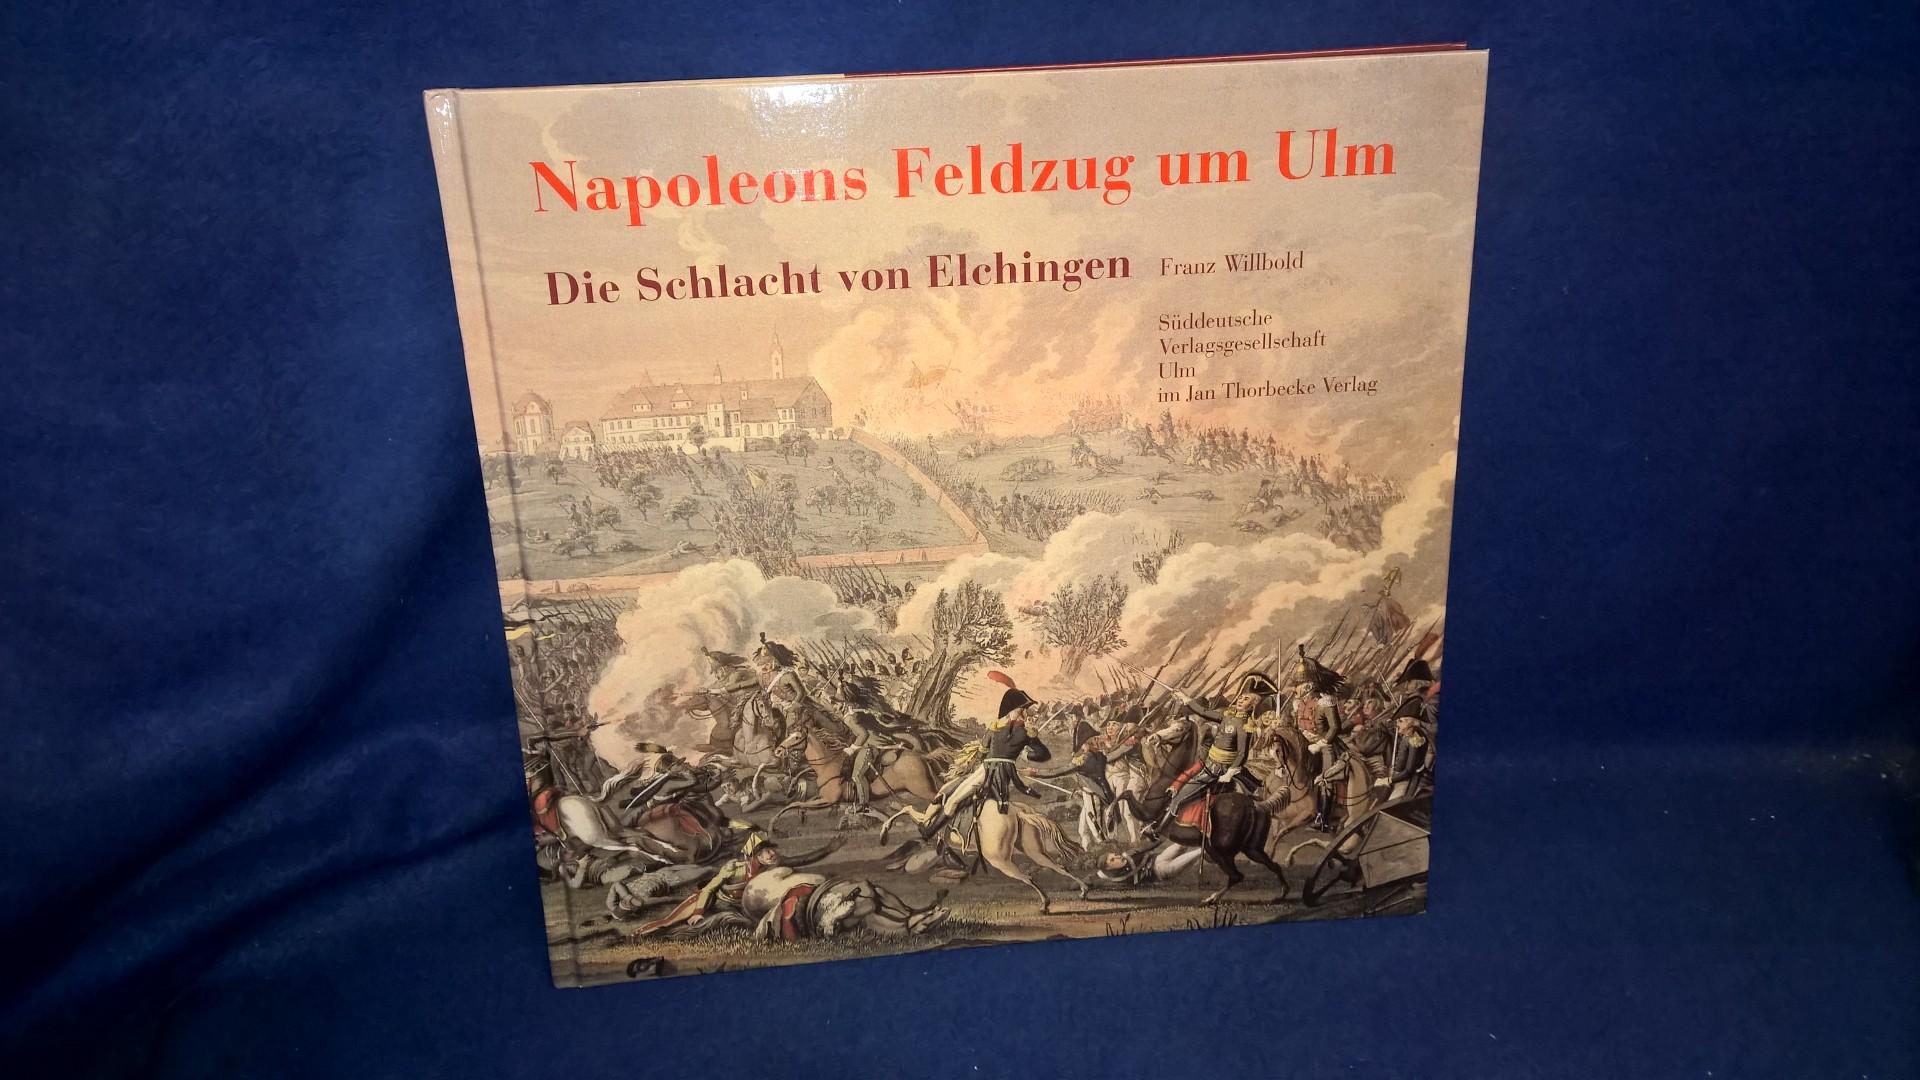 Napoleons Feldzug um Ulm: Die Schlacht von Elchingen 14. Oktober 1805.